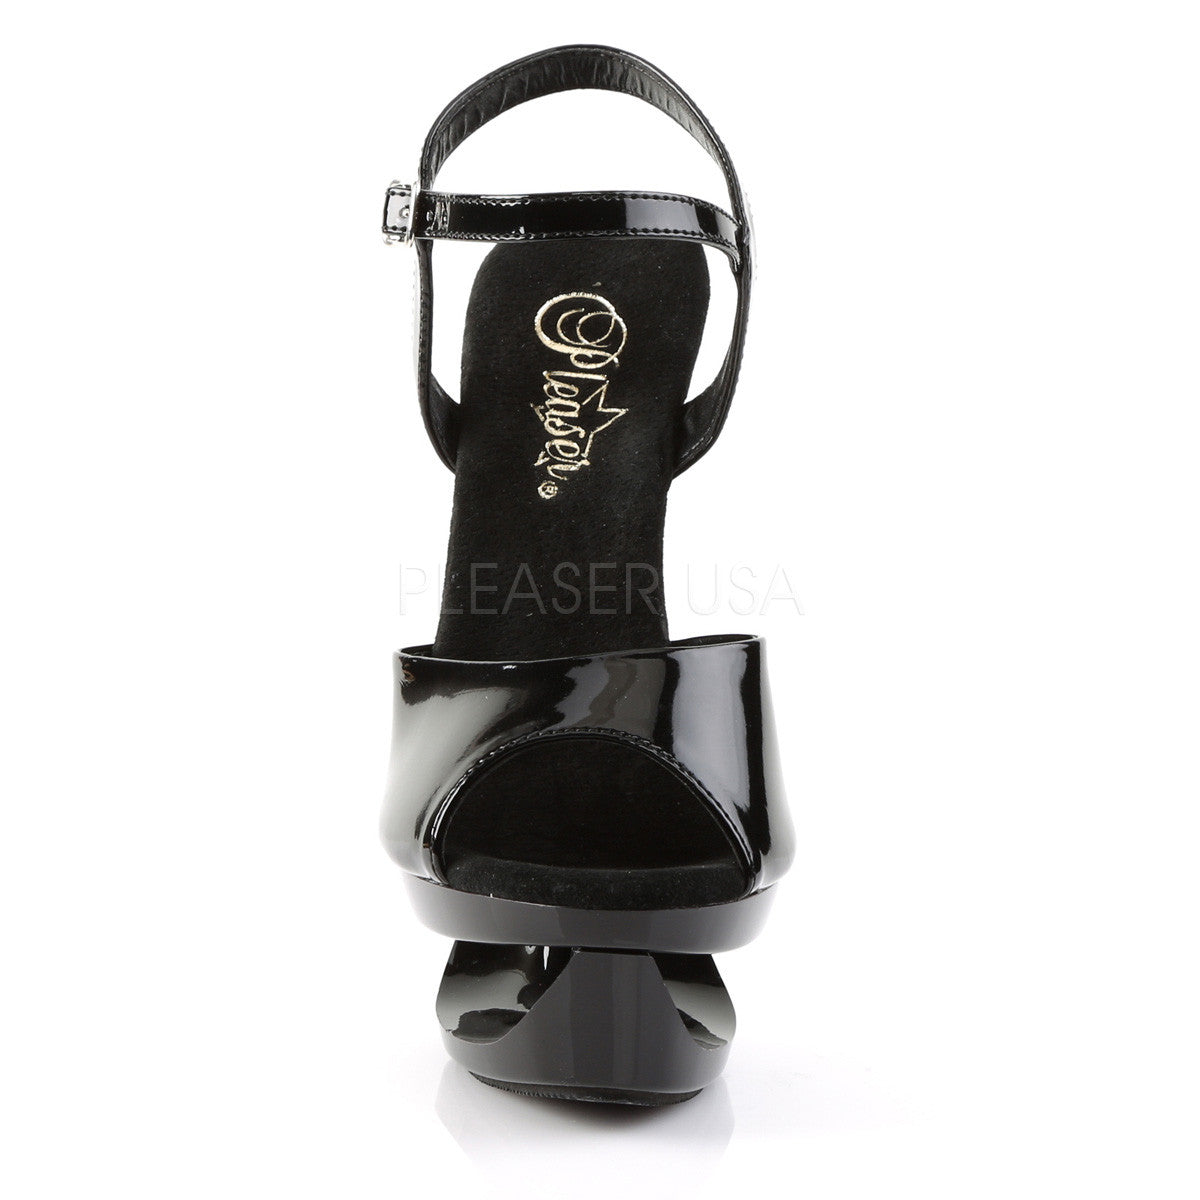 Pleaser ECLIPSE-609 Black Pat Ankle Strap Sandals - Shoecup.com - 2